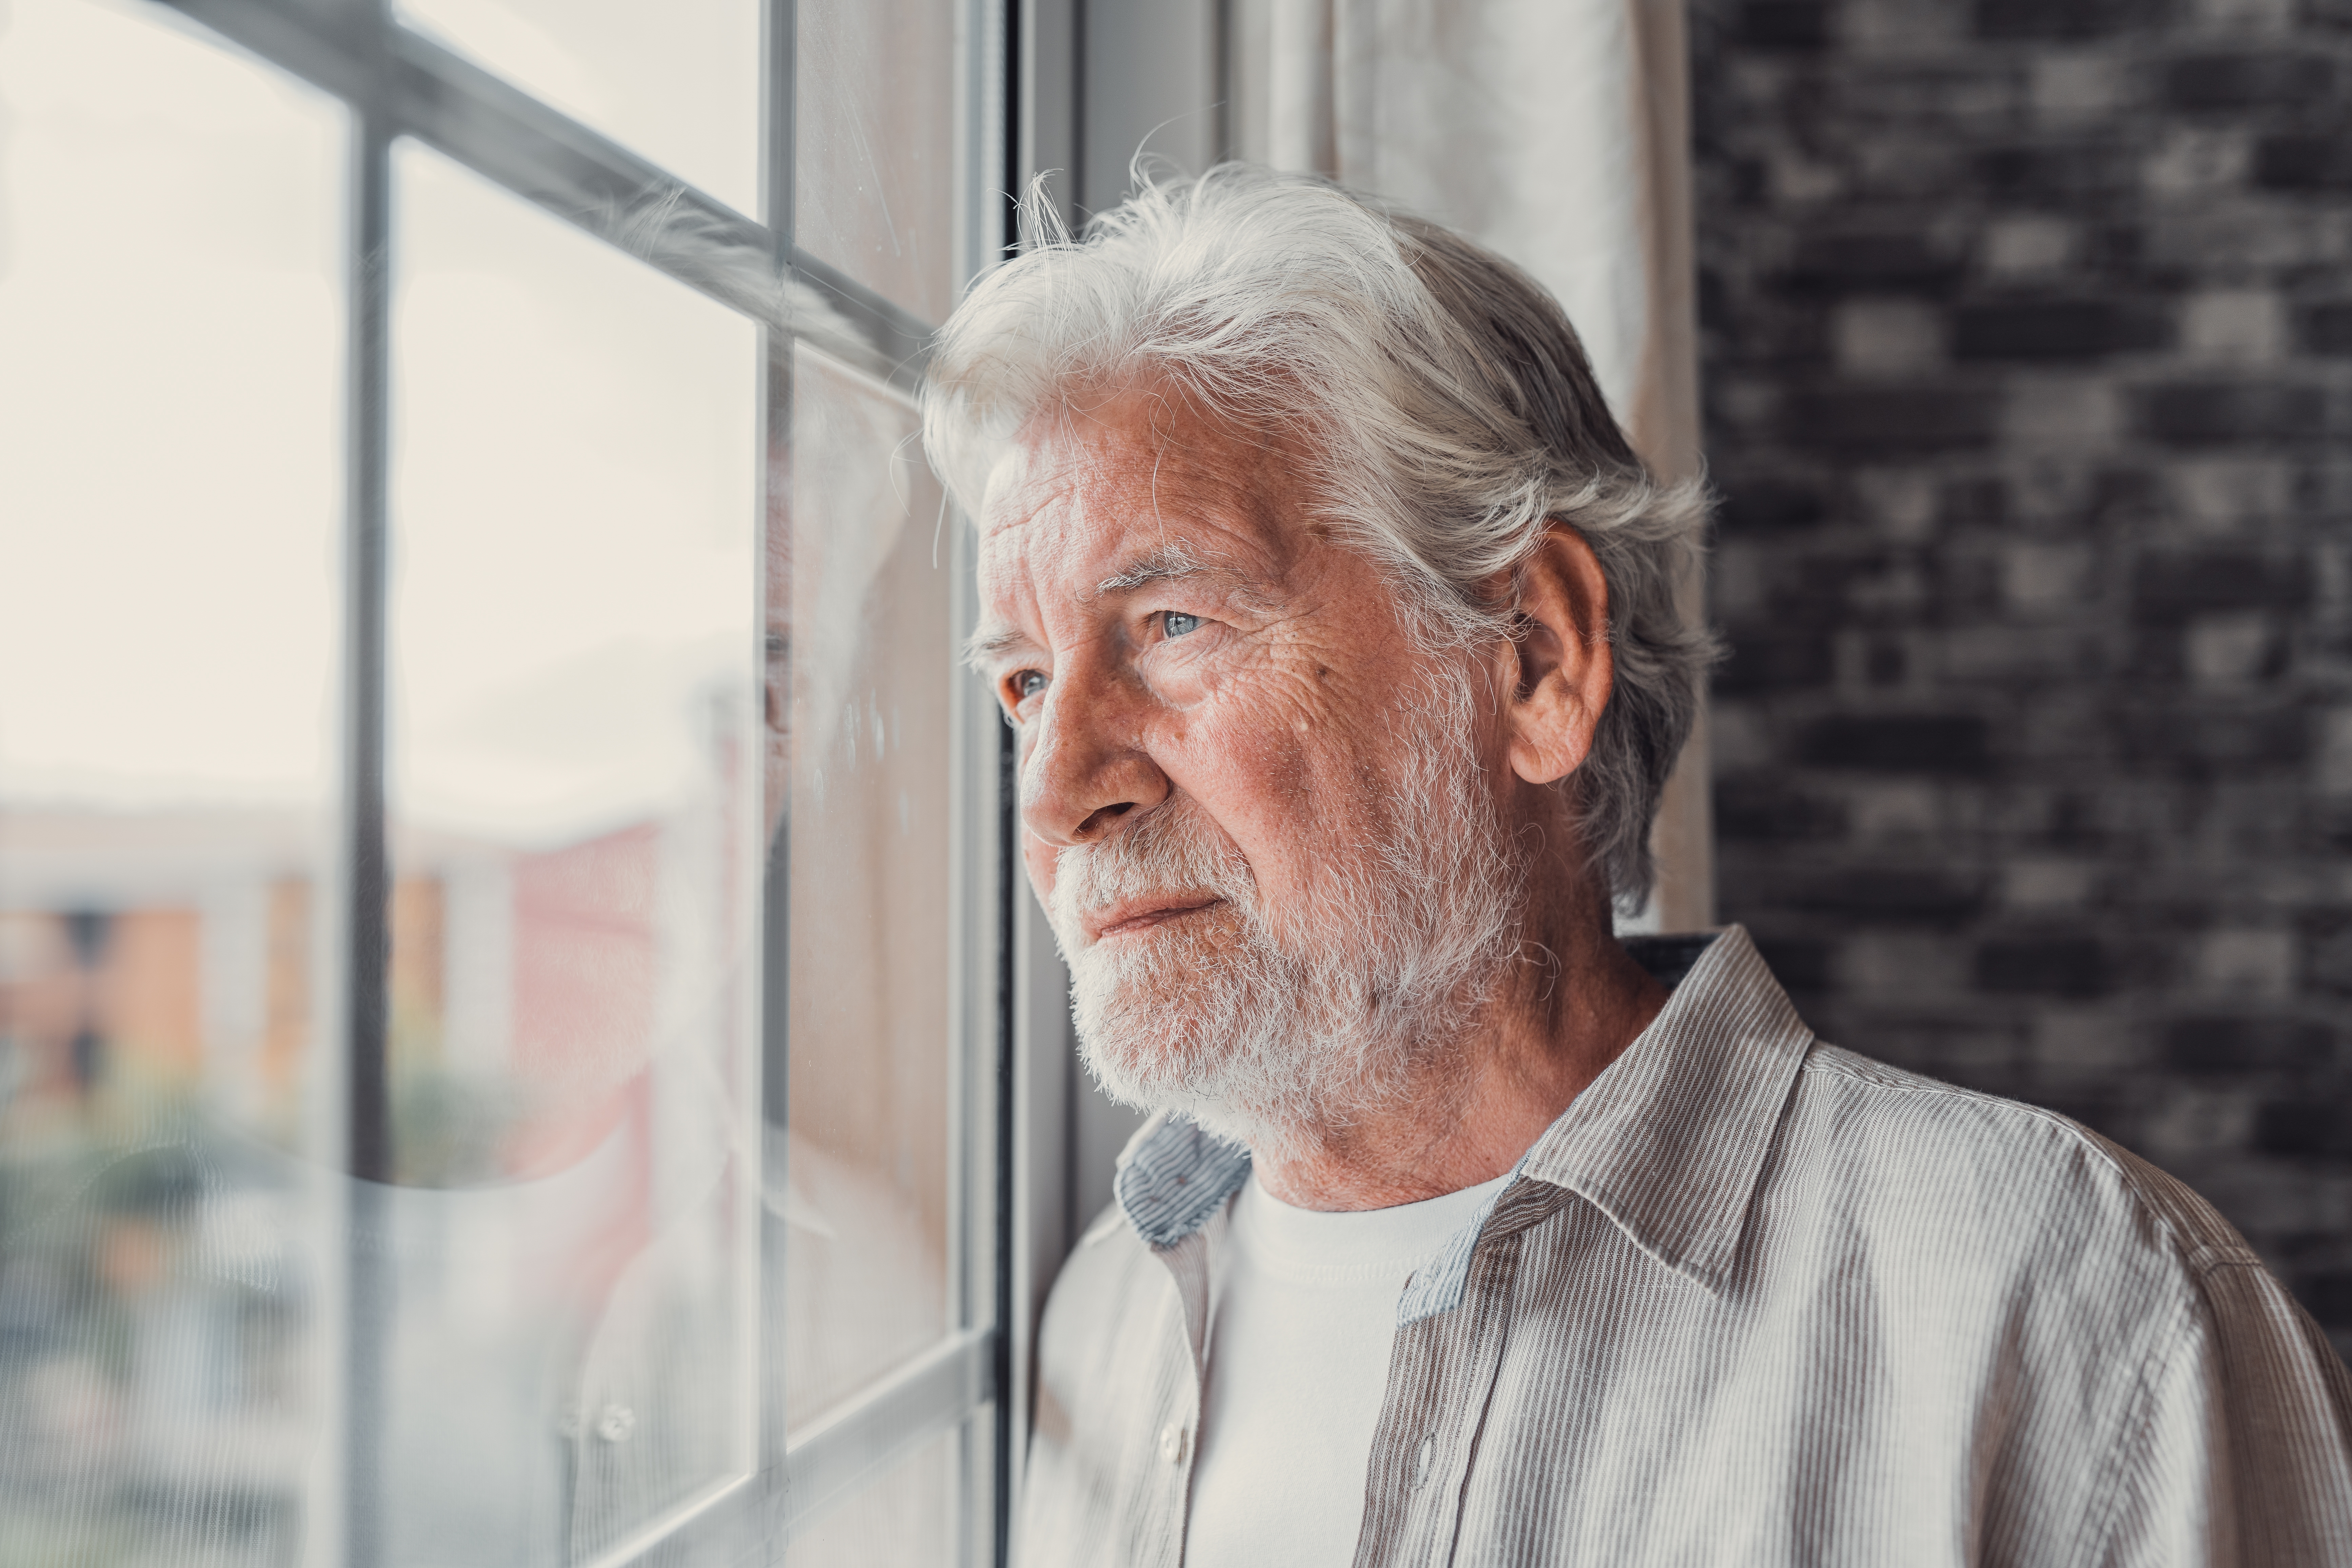 A worried senior man standing near a window | Source: Shutterstock